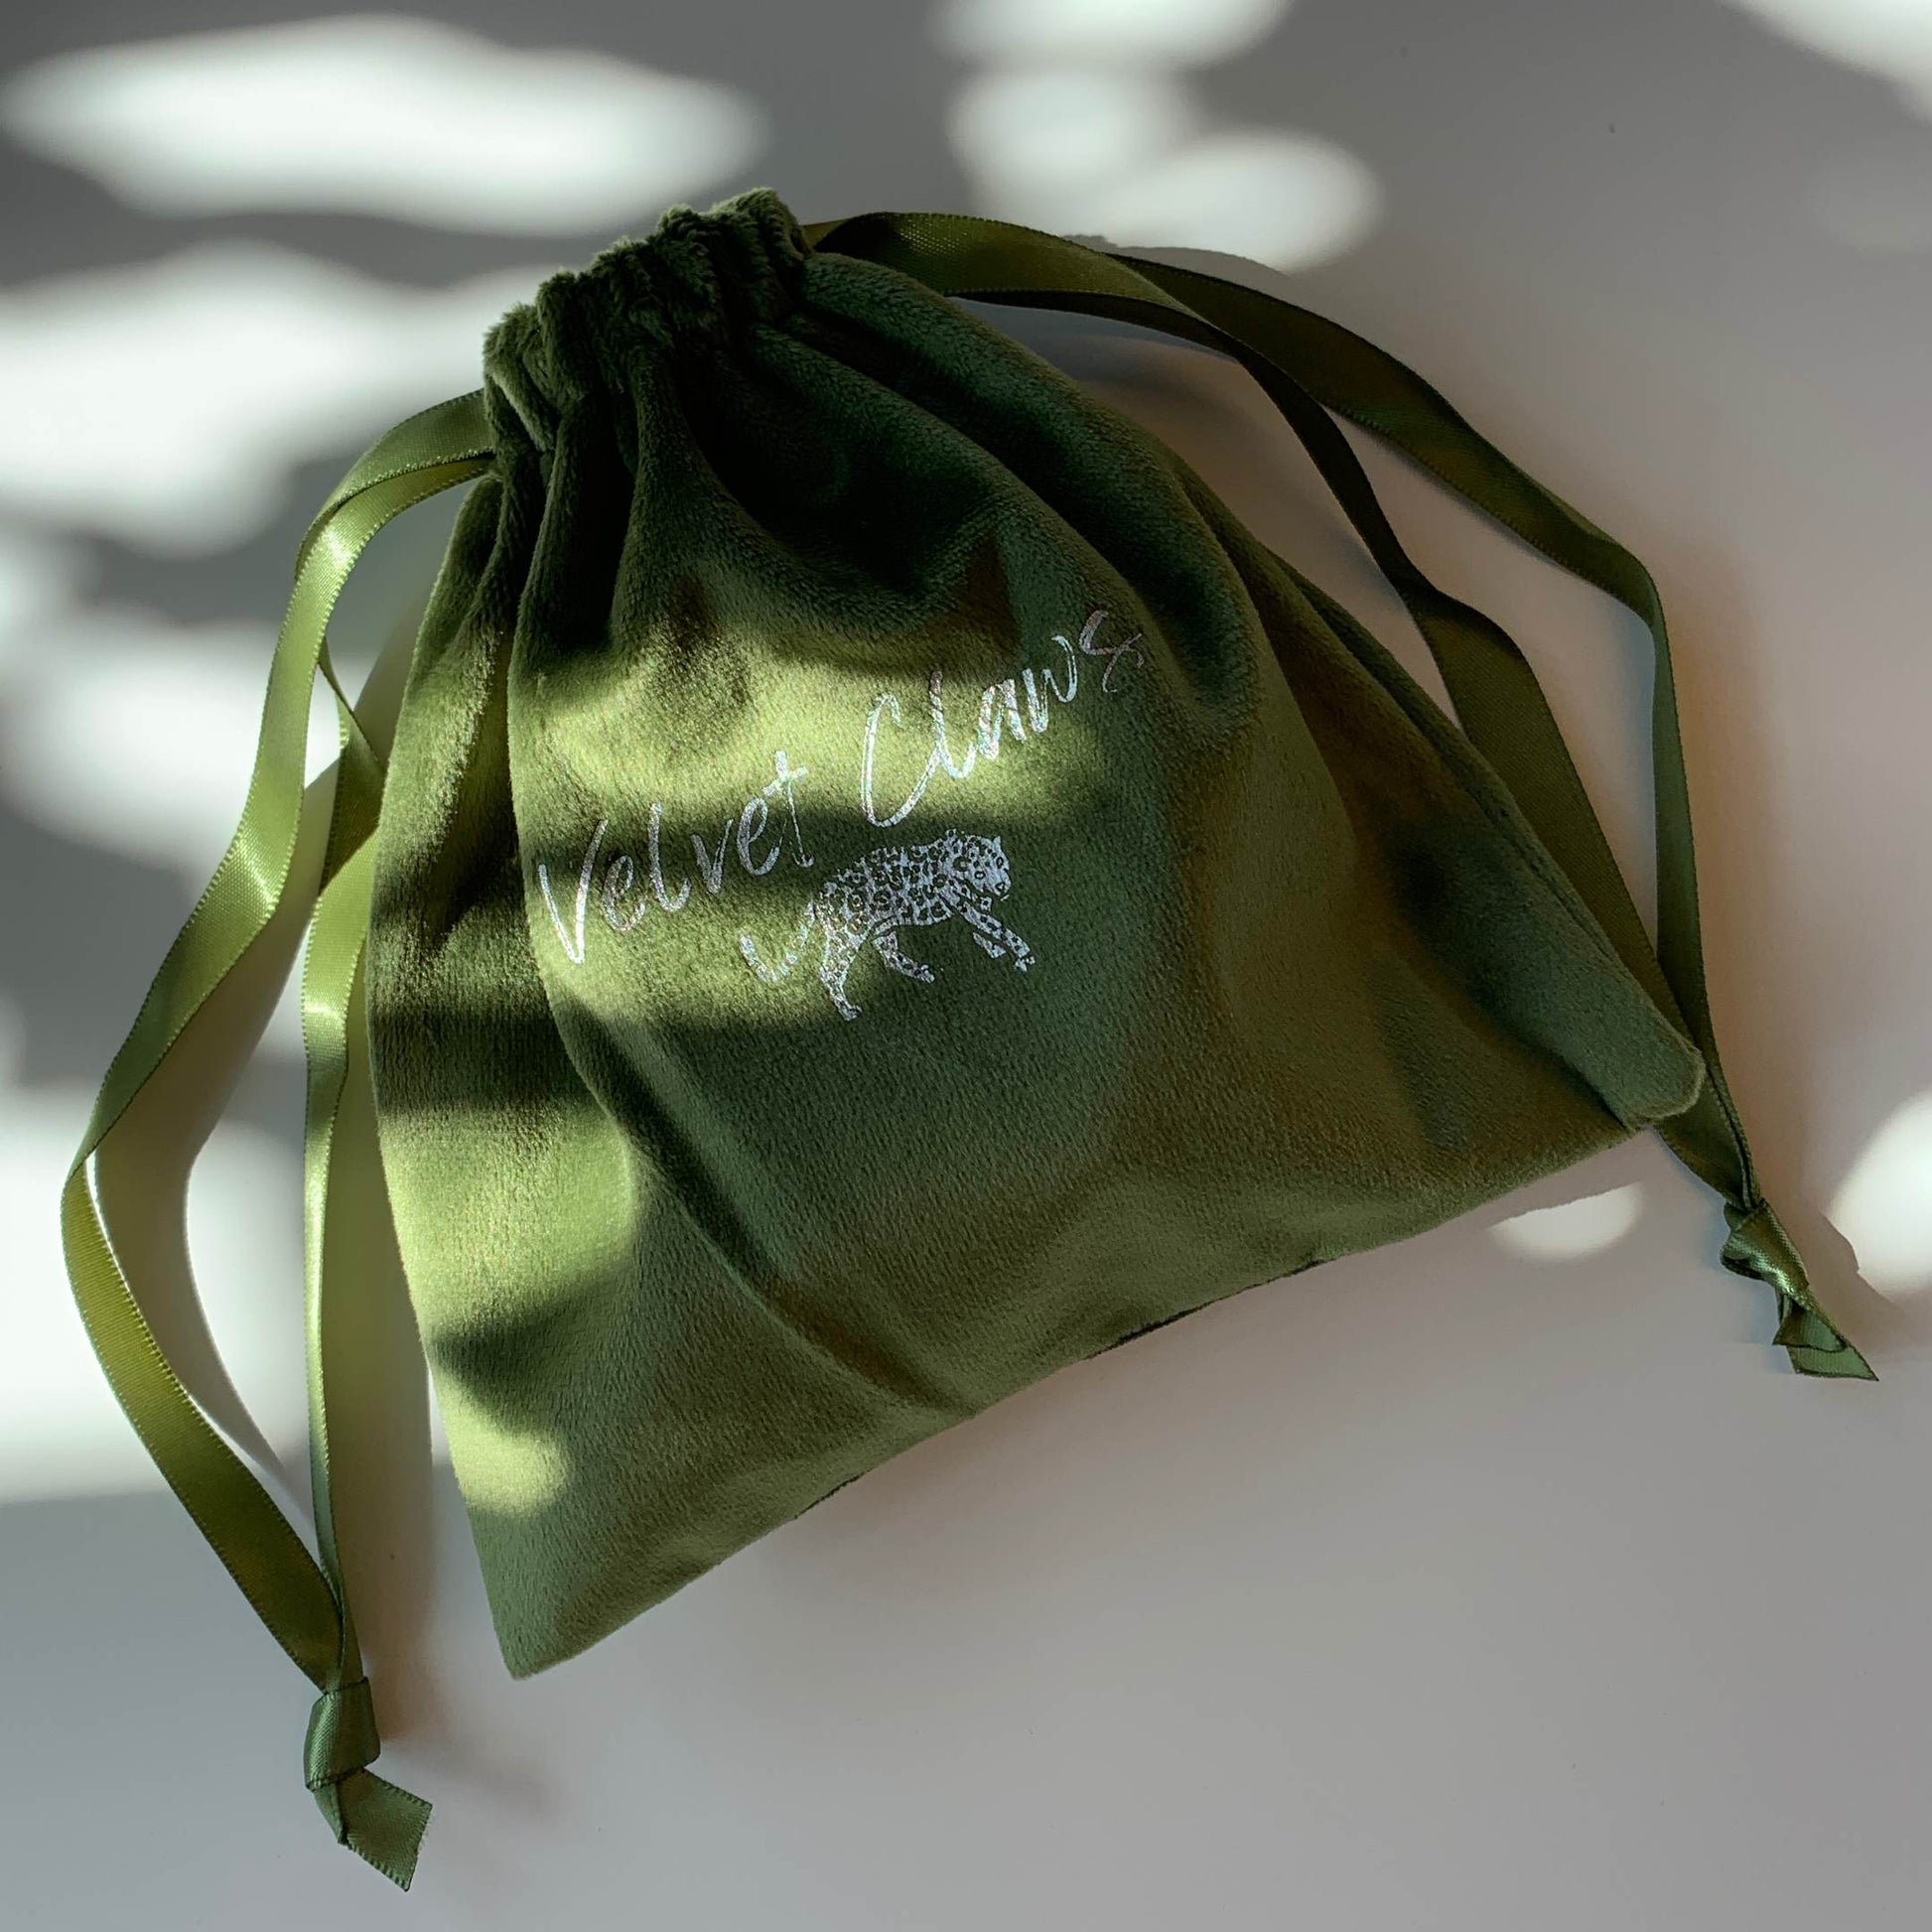 Velvet Claws Hair Clip | Green Leaf | Claw Clip in Velvet Travel Bag